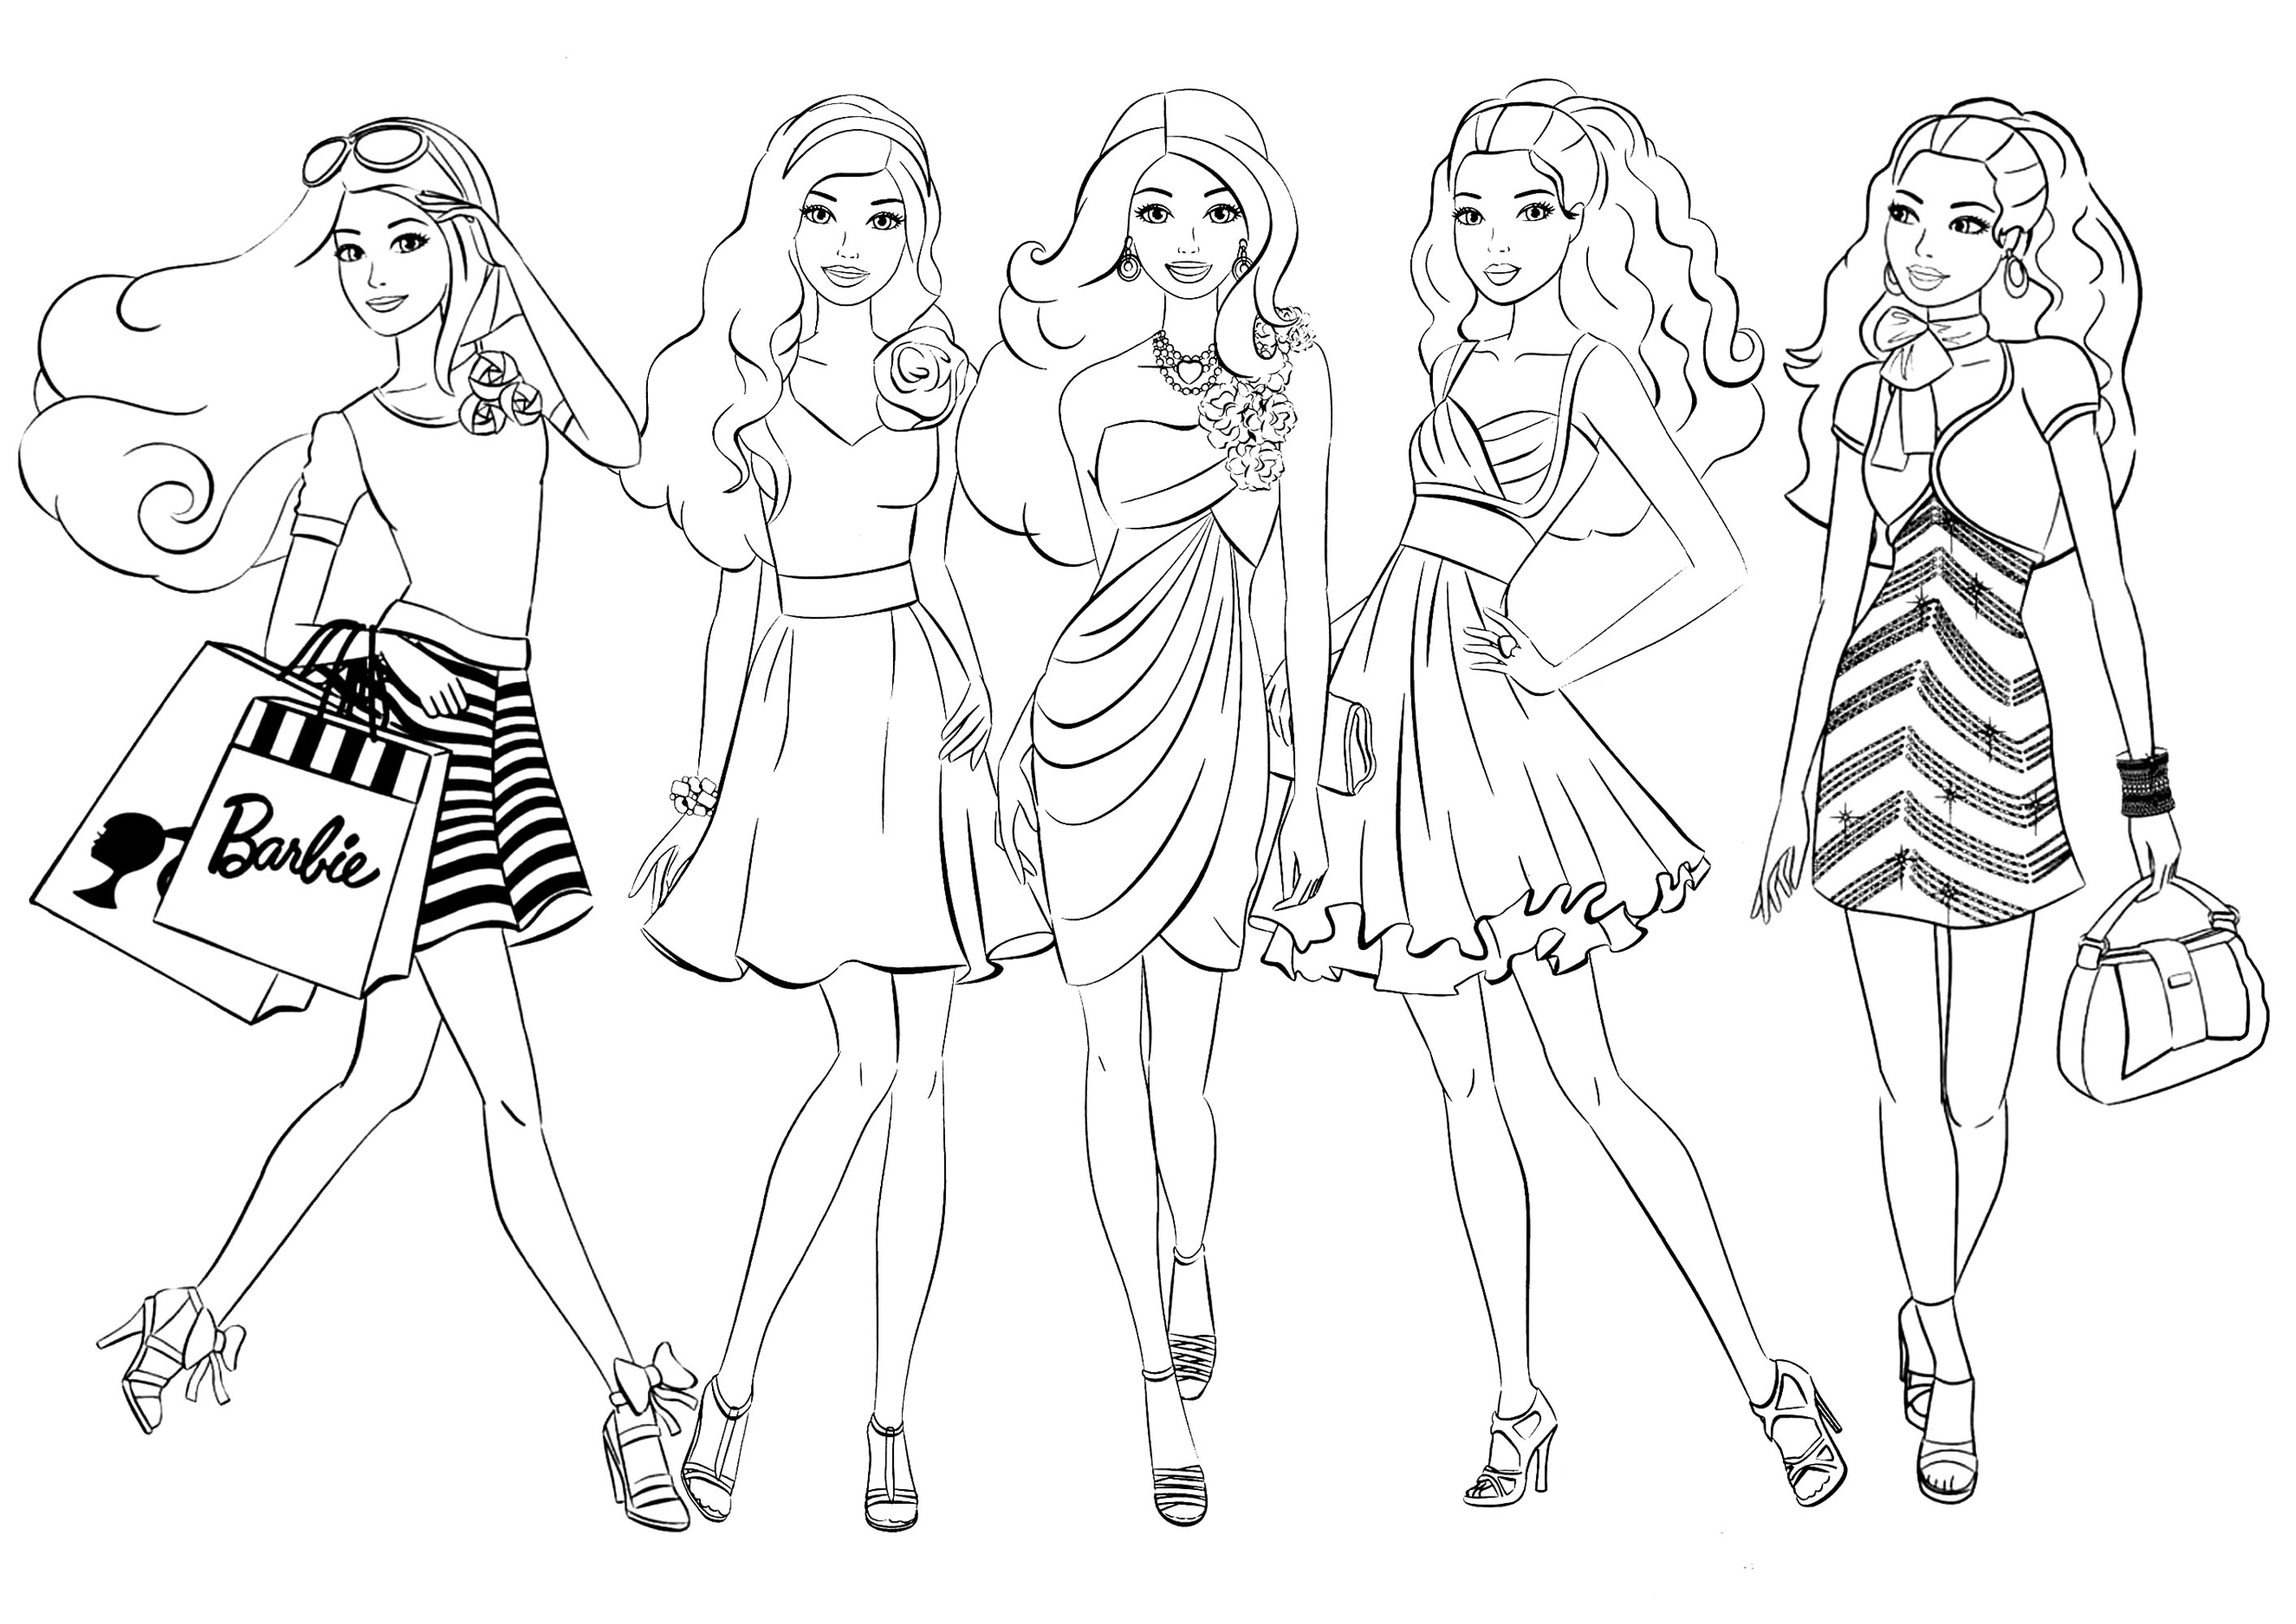 Cinco bonecas Barbie. Esta página para colorir apresenta cinco personagens inspiradas nas bonecas Barbie, com roupas diferentes para colorir como quiser.